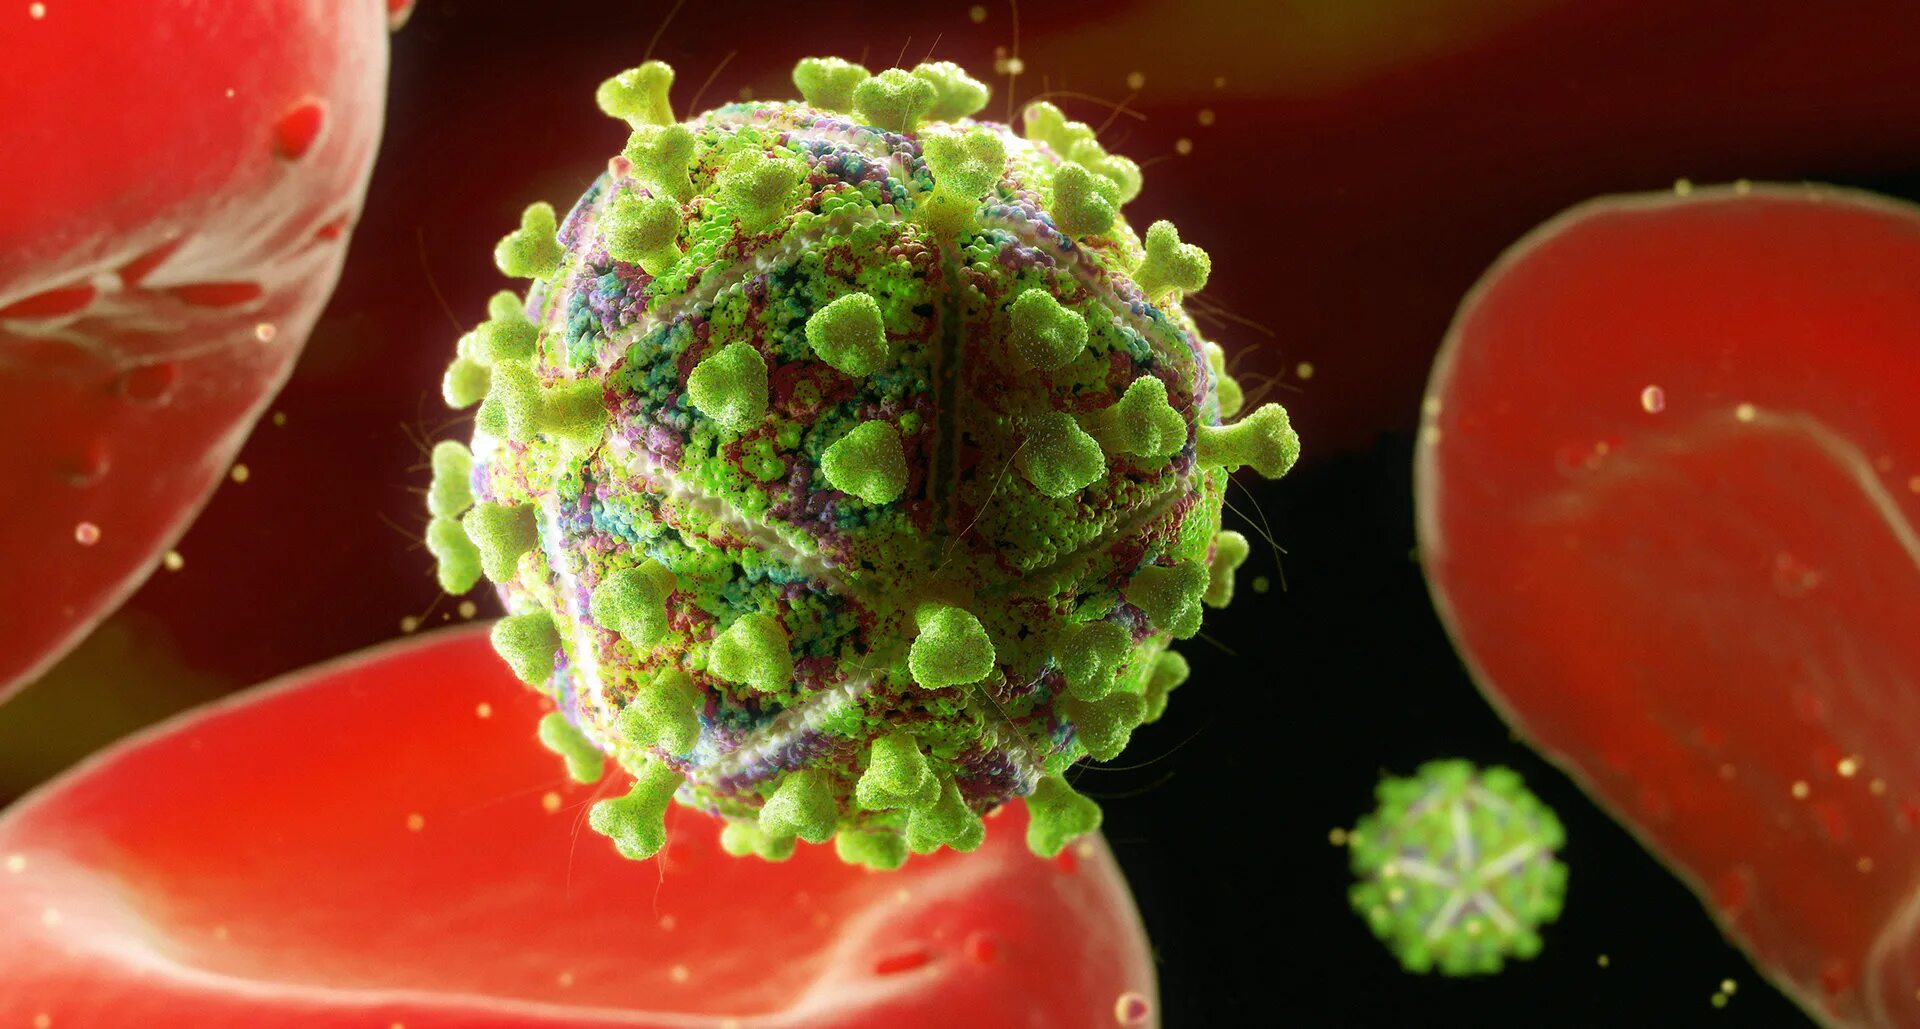 СПИД бактерия. Вирус СПИДА. ВИЧ фото вируса. Human immunodeficiency